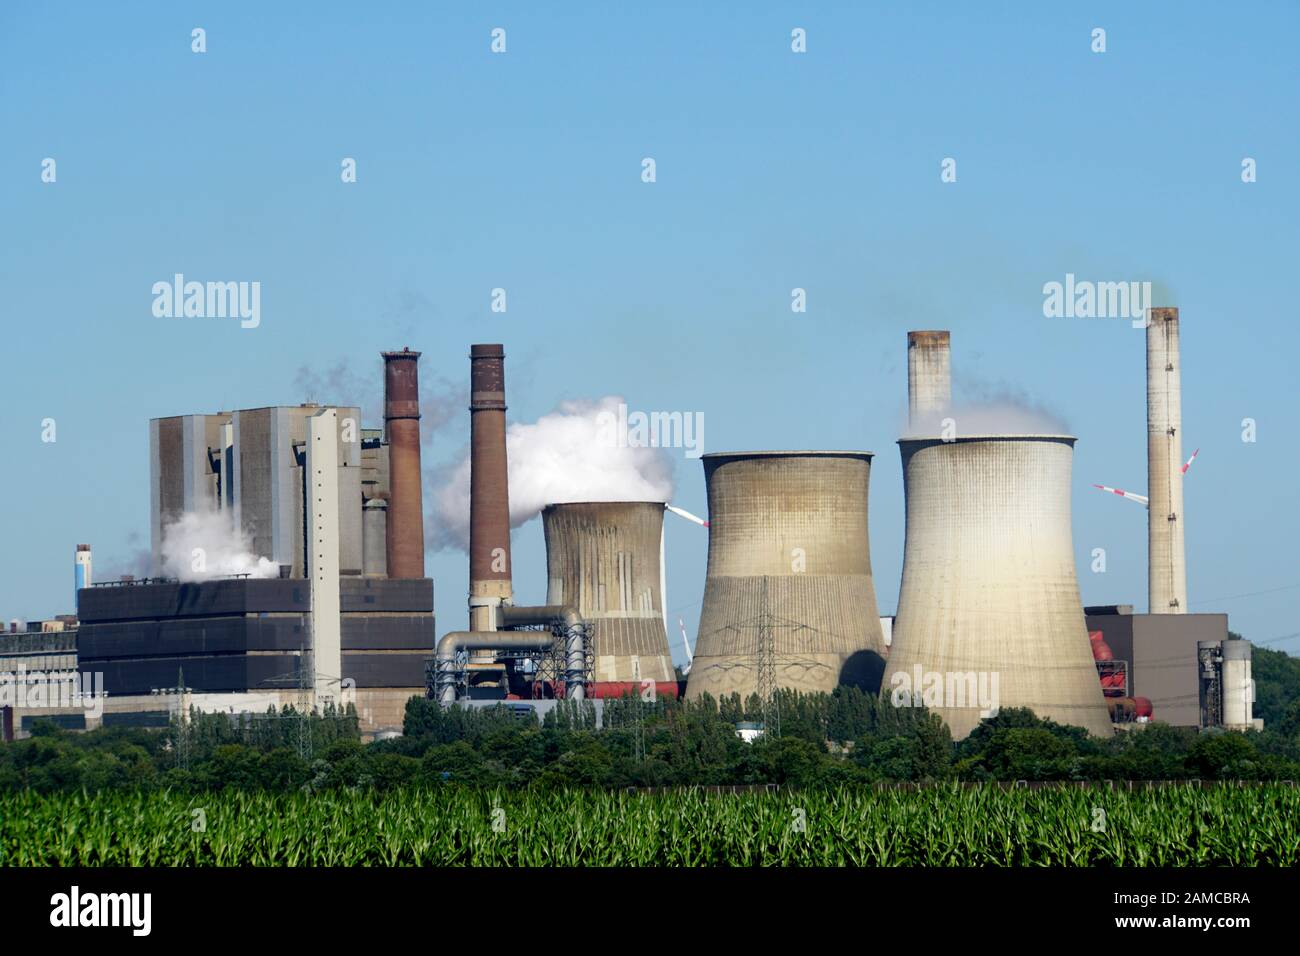 Braunkohlekraftwerk Weisweiler, Stolberg, Nordrhein-Westfalen, Deutschland Foto Stock